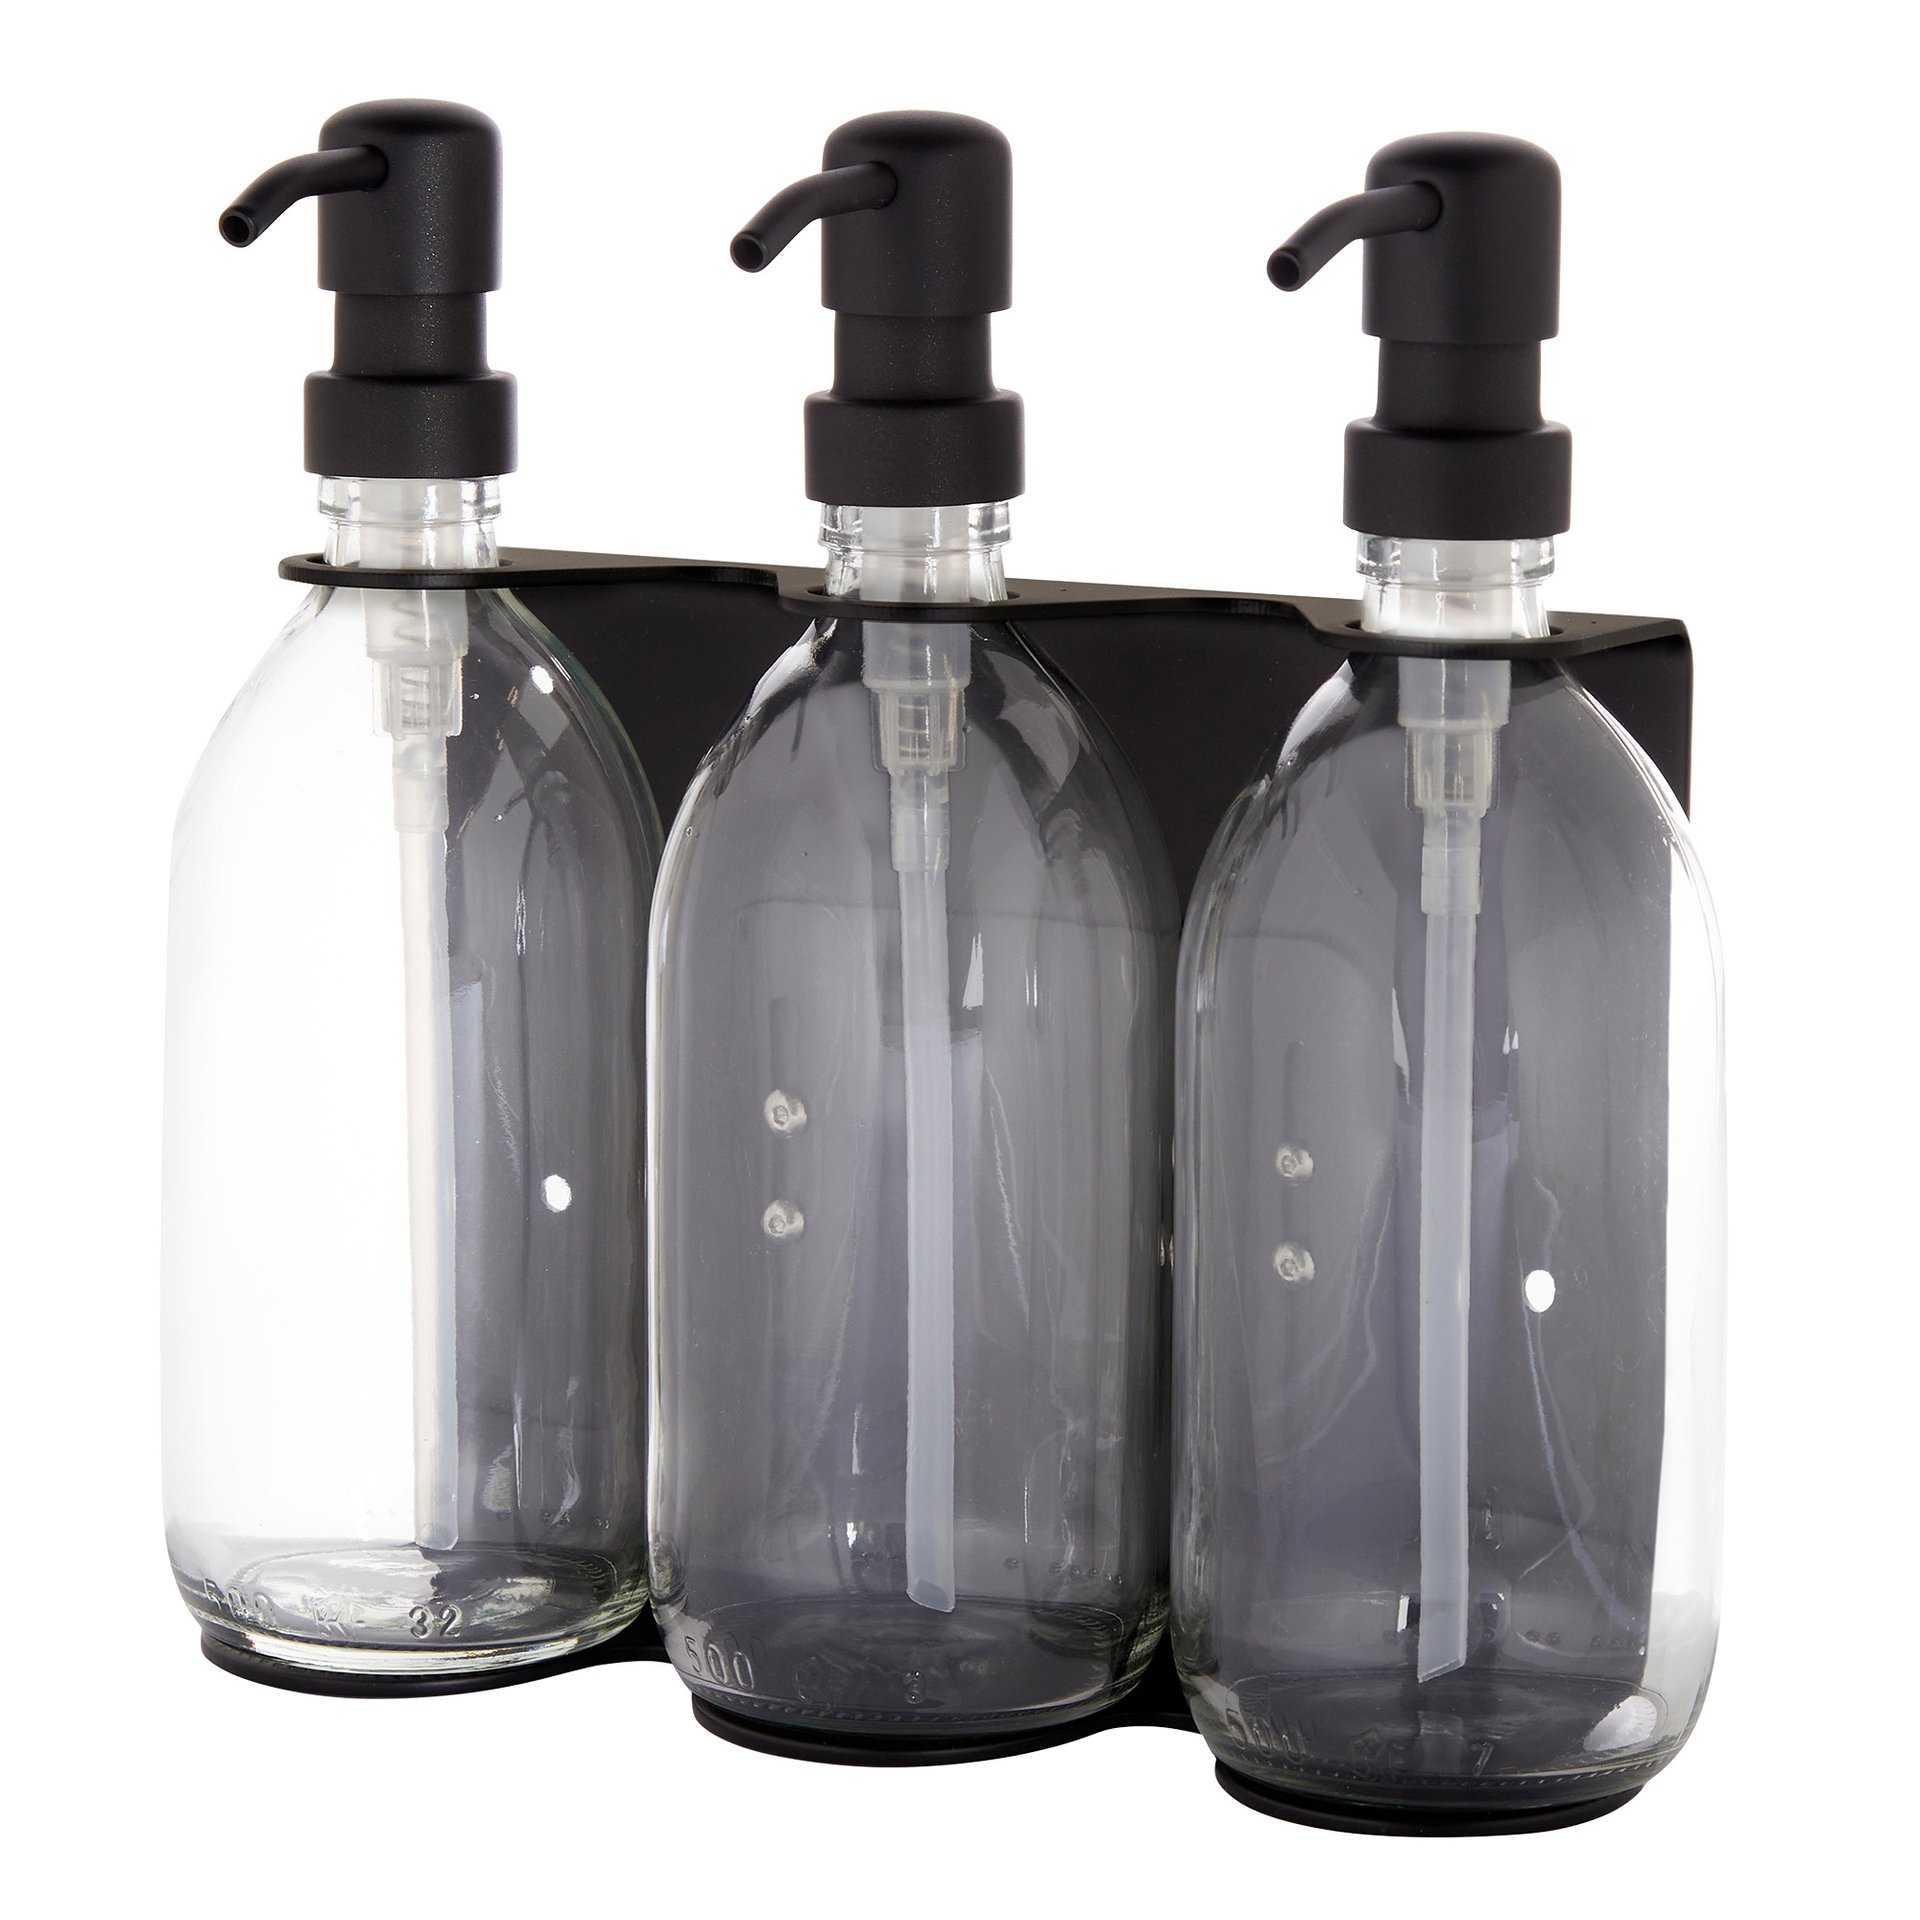 Dispensador de jabón de pared triple en negro con dispensadores transparentes y bombas negras